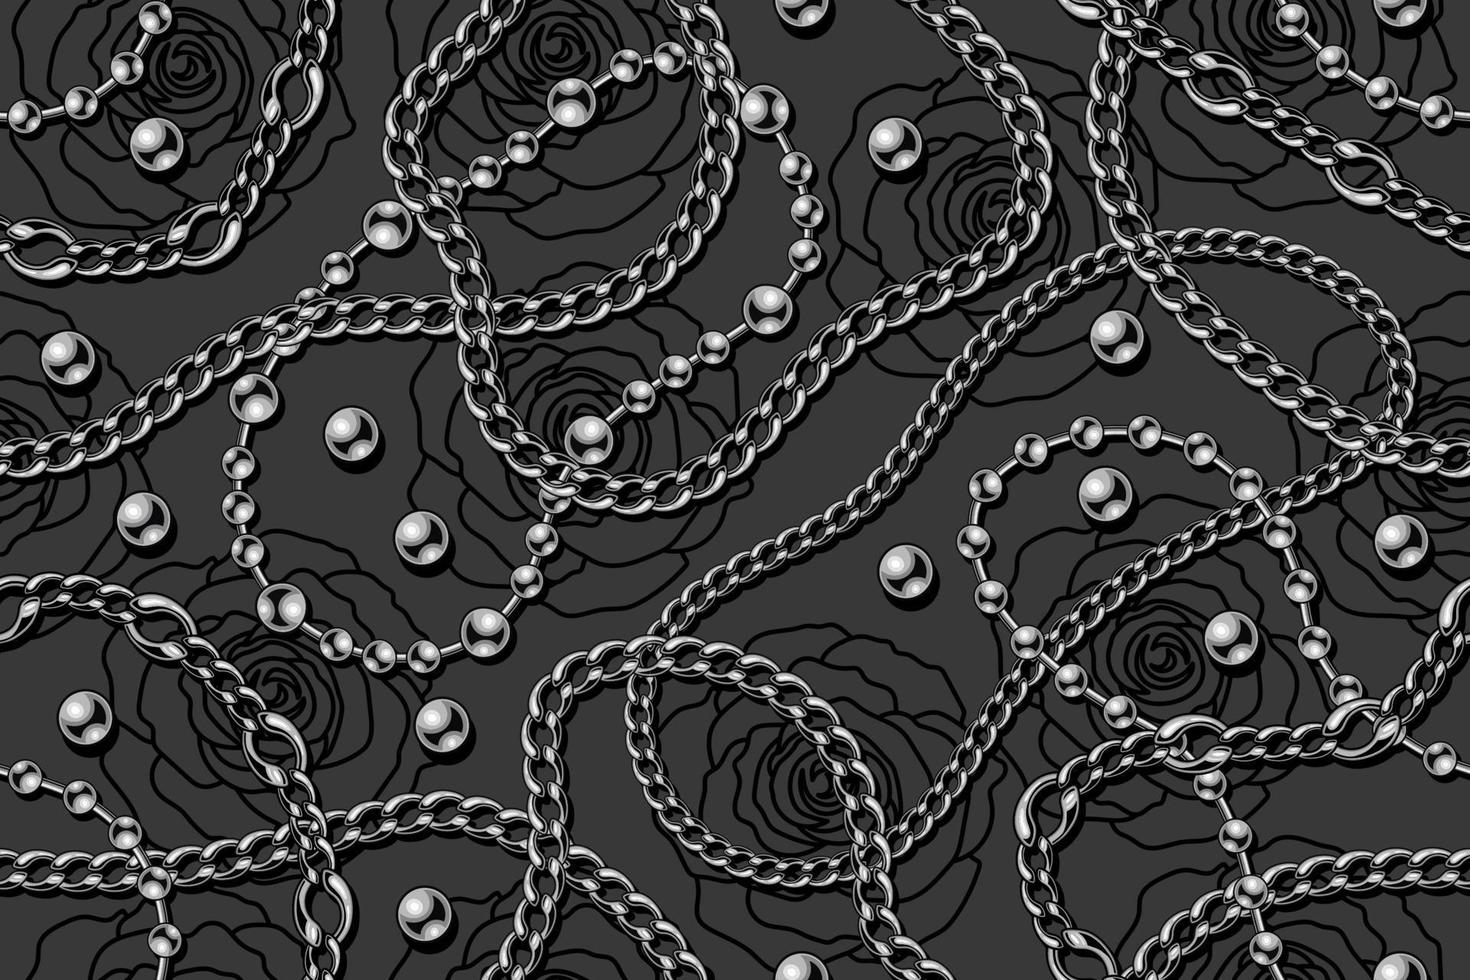 sömlöst grått mönster med silverpärlor, strängar av metallpärlor, rostfria kedjor, linjära svarta rosor på en mörk bakgrund. vektor illustration